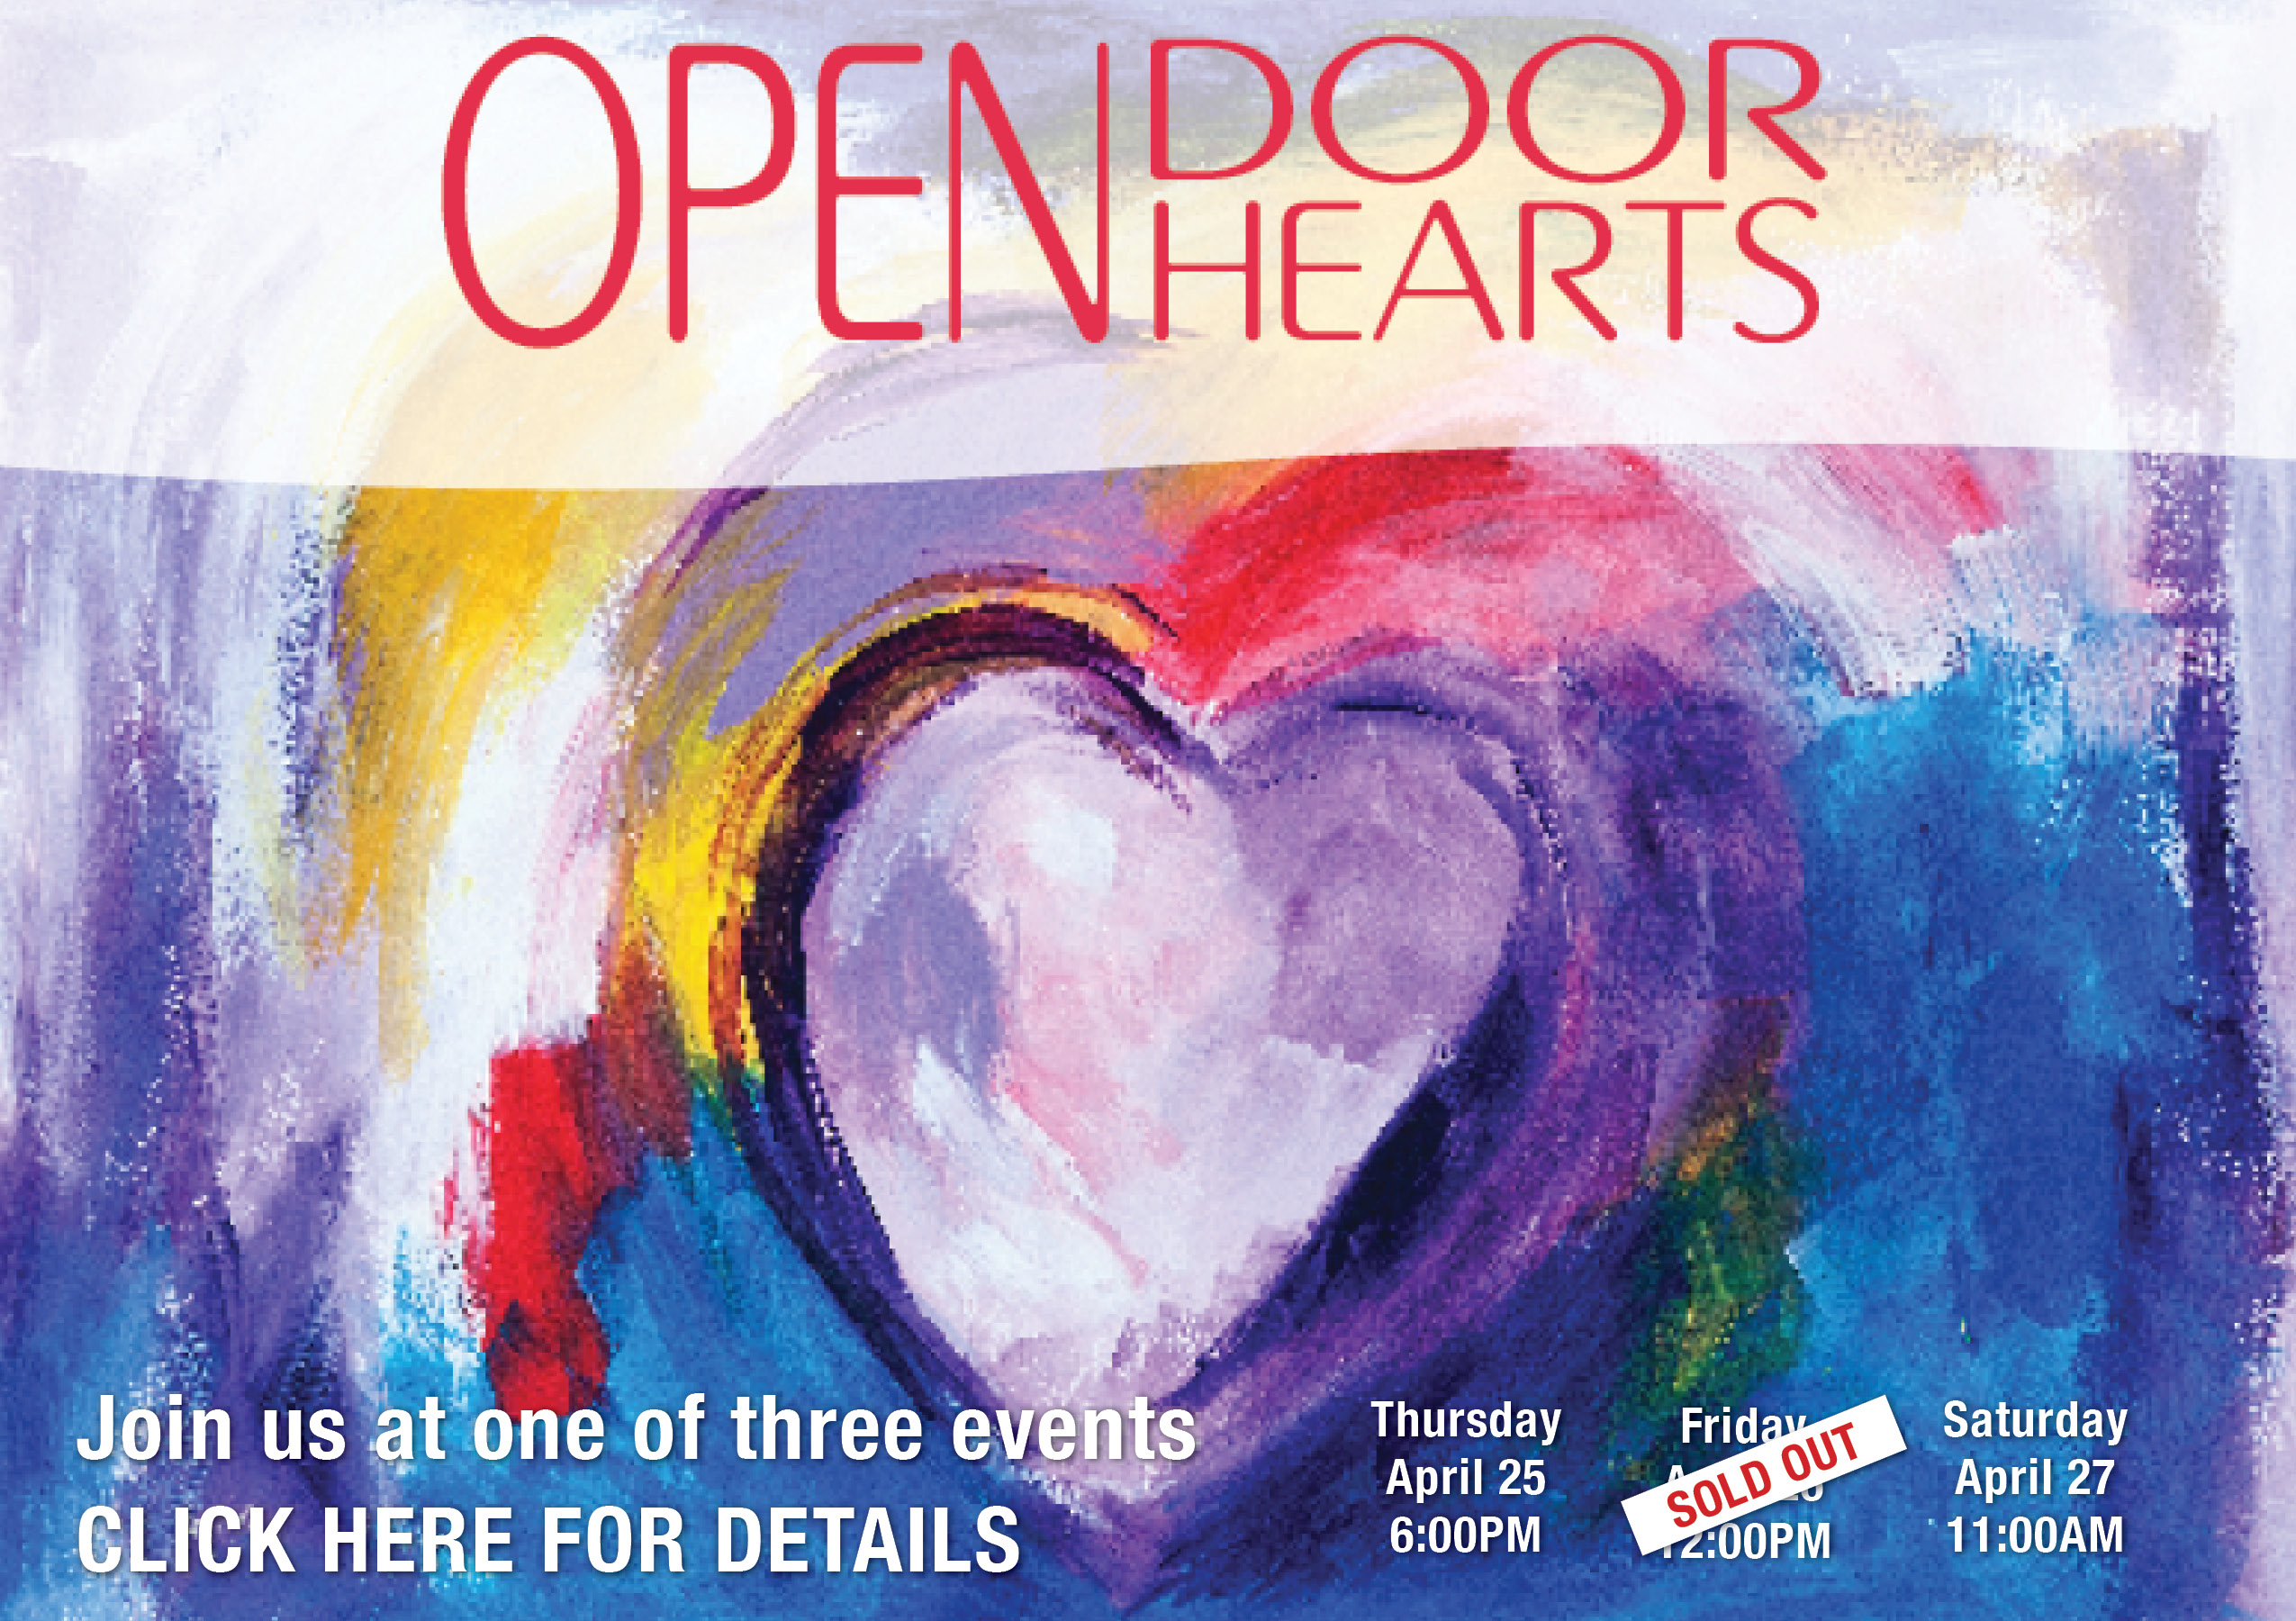 Open Door Open Hearts